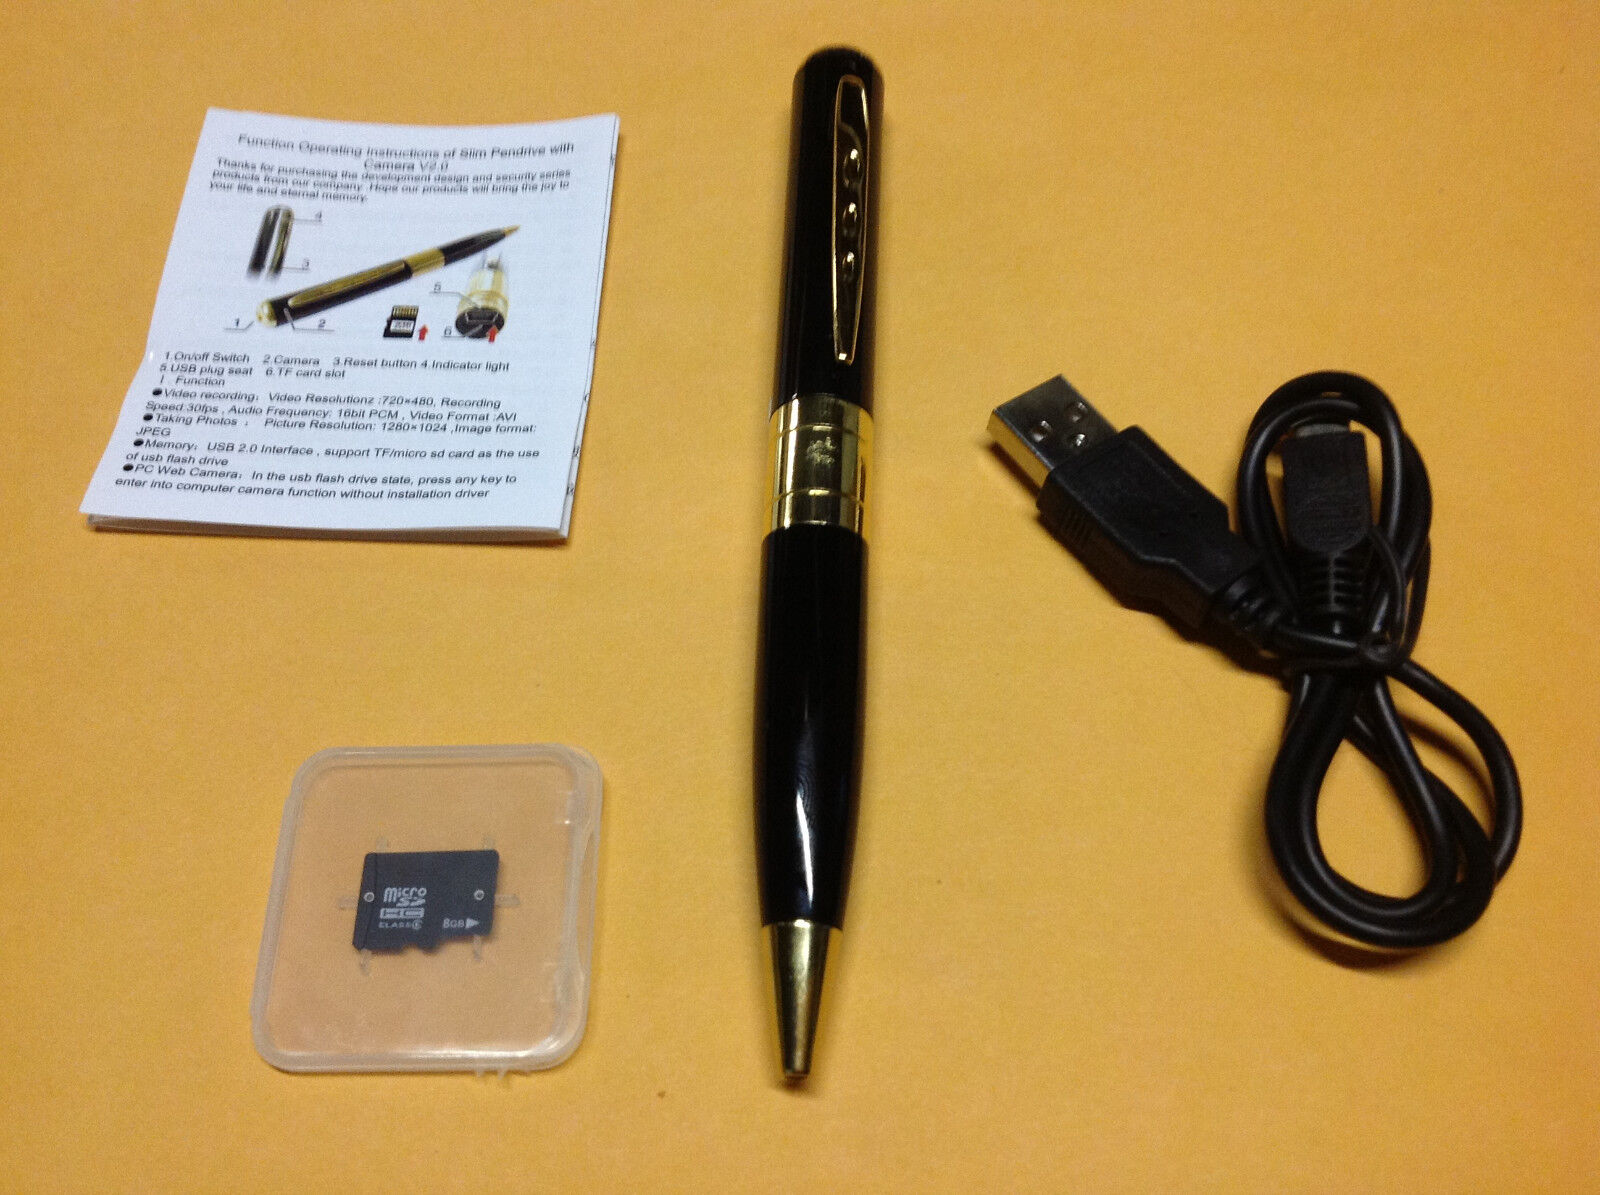 8GB Gold HD Spy Pen Camera DVR Audio Video Recorder Camcorder Mini DV 1280*960